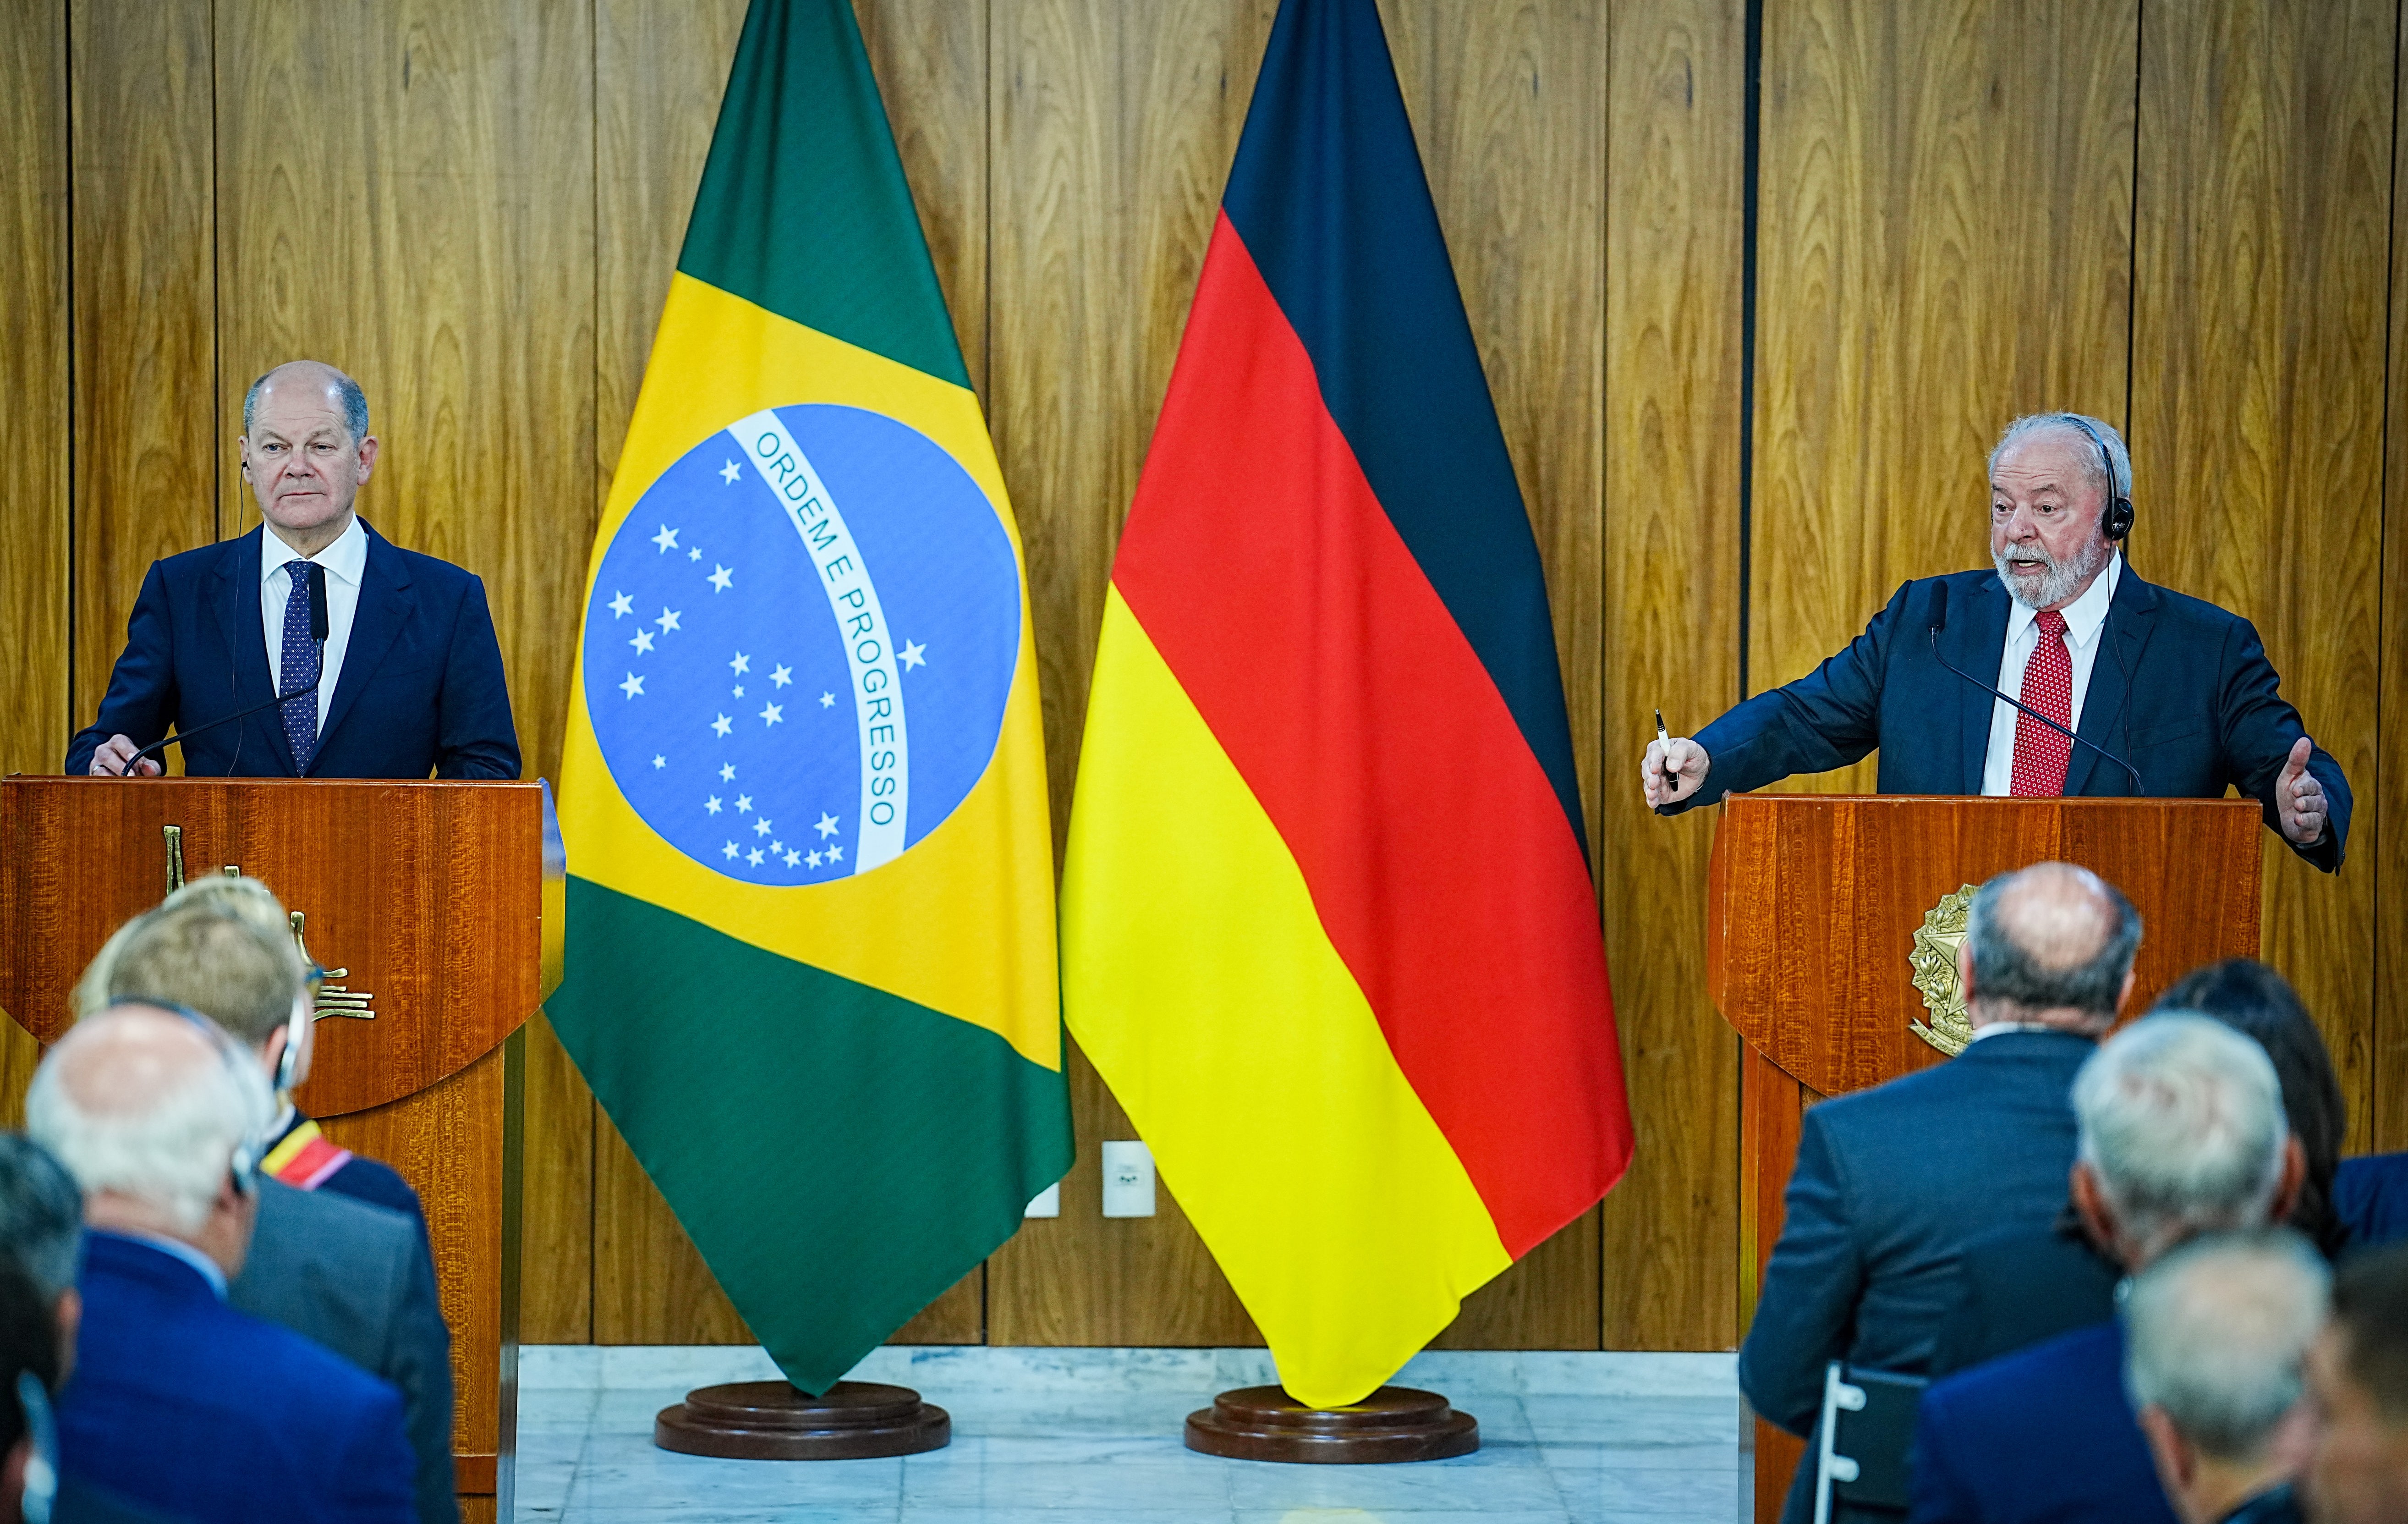 Südamerika-Reise des Kanzlers - Scholz optimistisch für EU-Mercosur-Abkommen